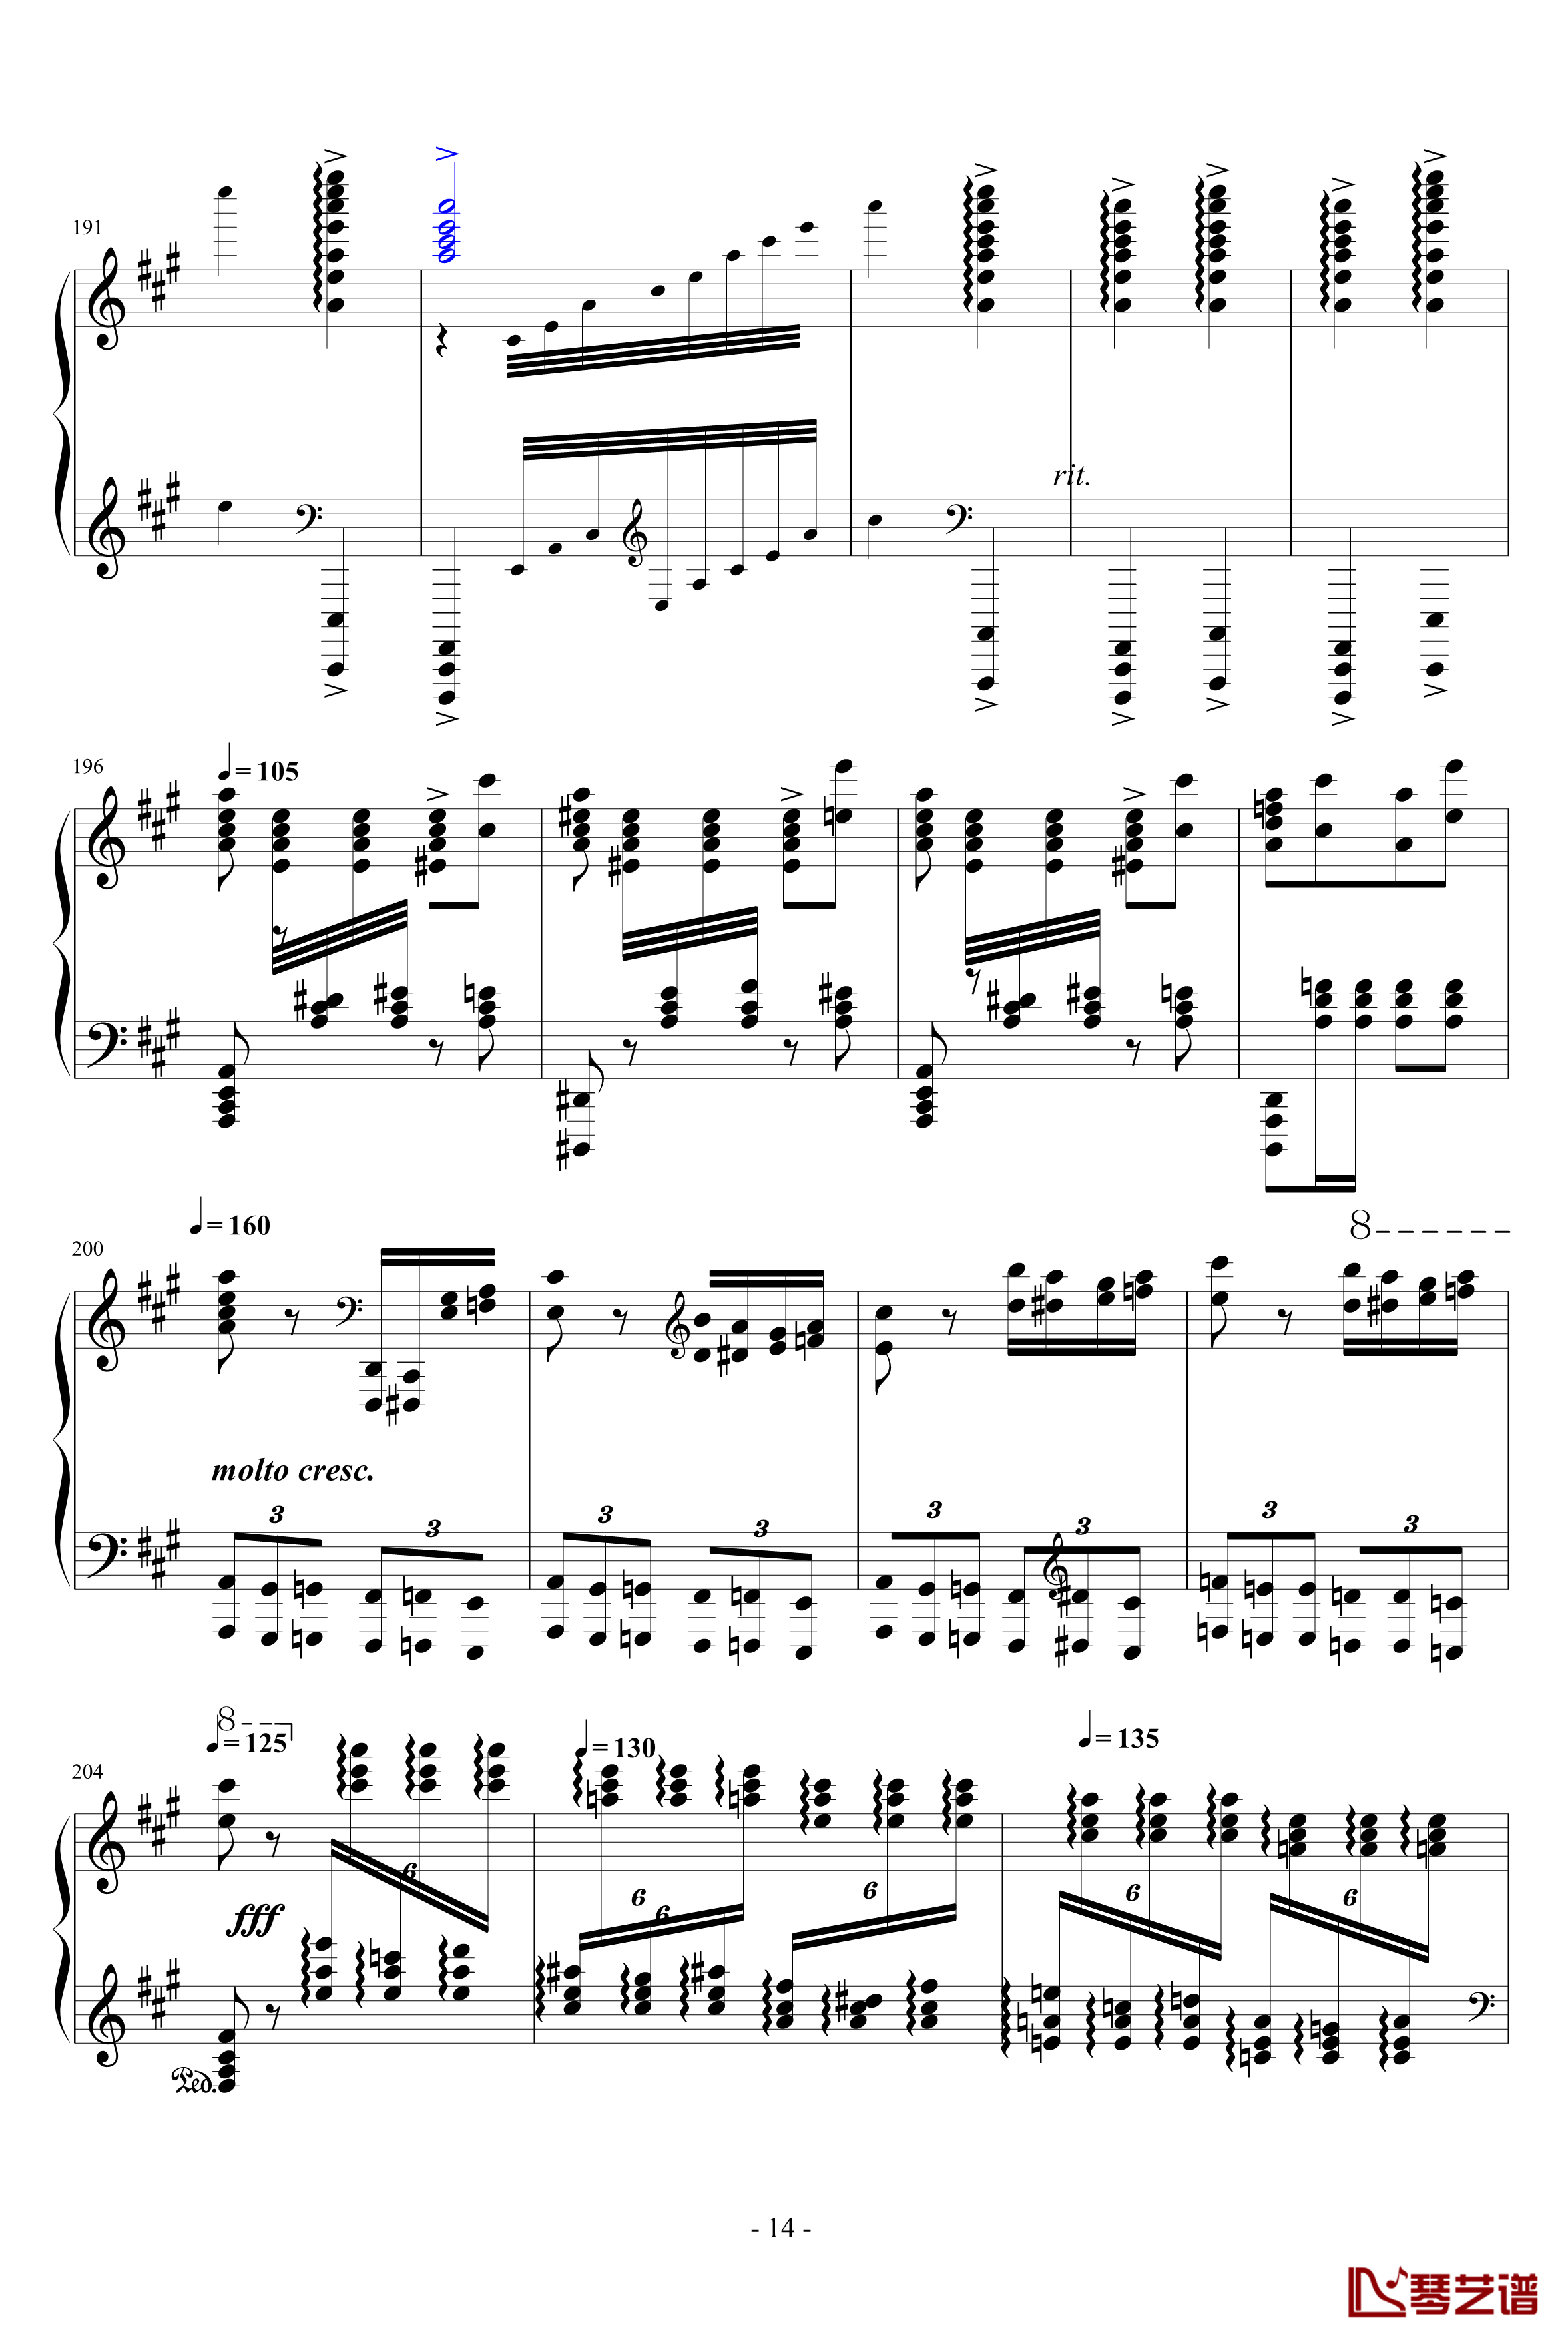 瓦洛多斯土耳其钢琴谱-爵士版-修正-瓦洛多斯